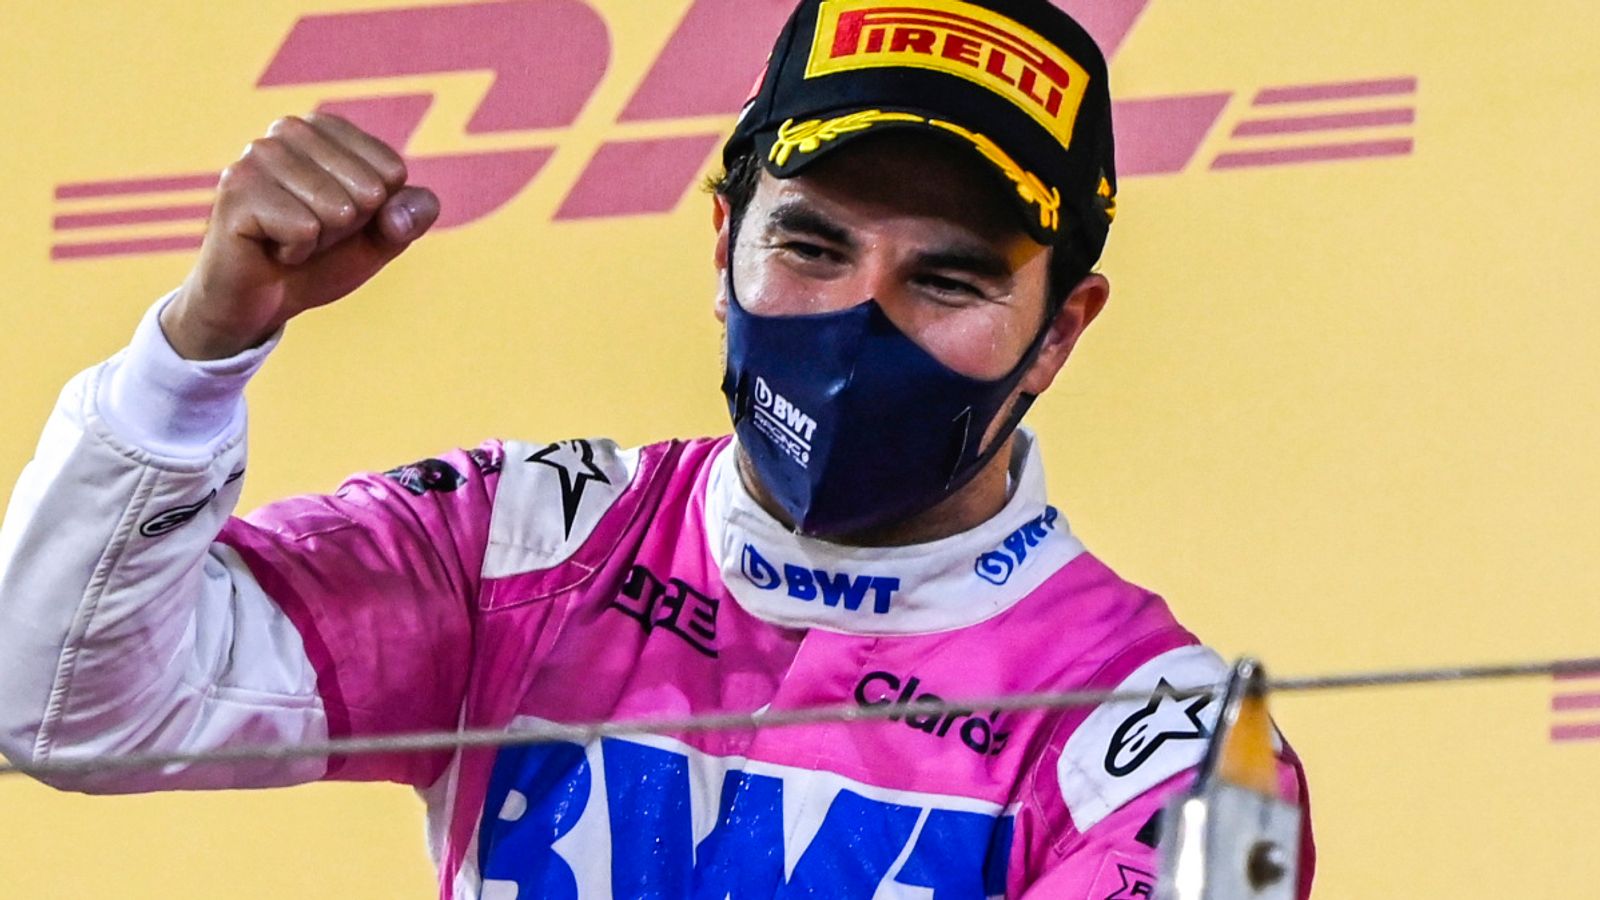 Sergio Perez uncertainty remains over F1 future despite maiden win at